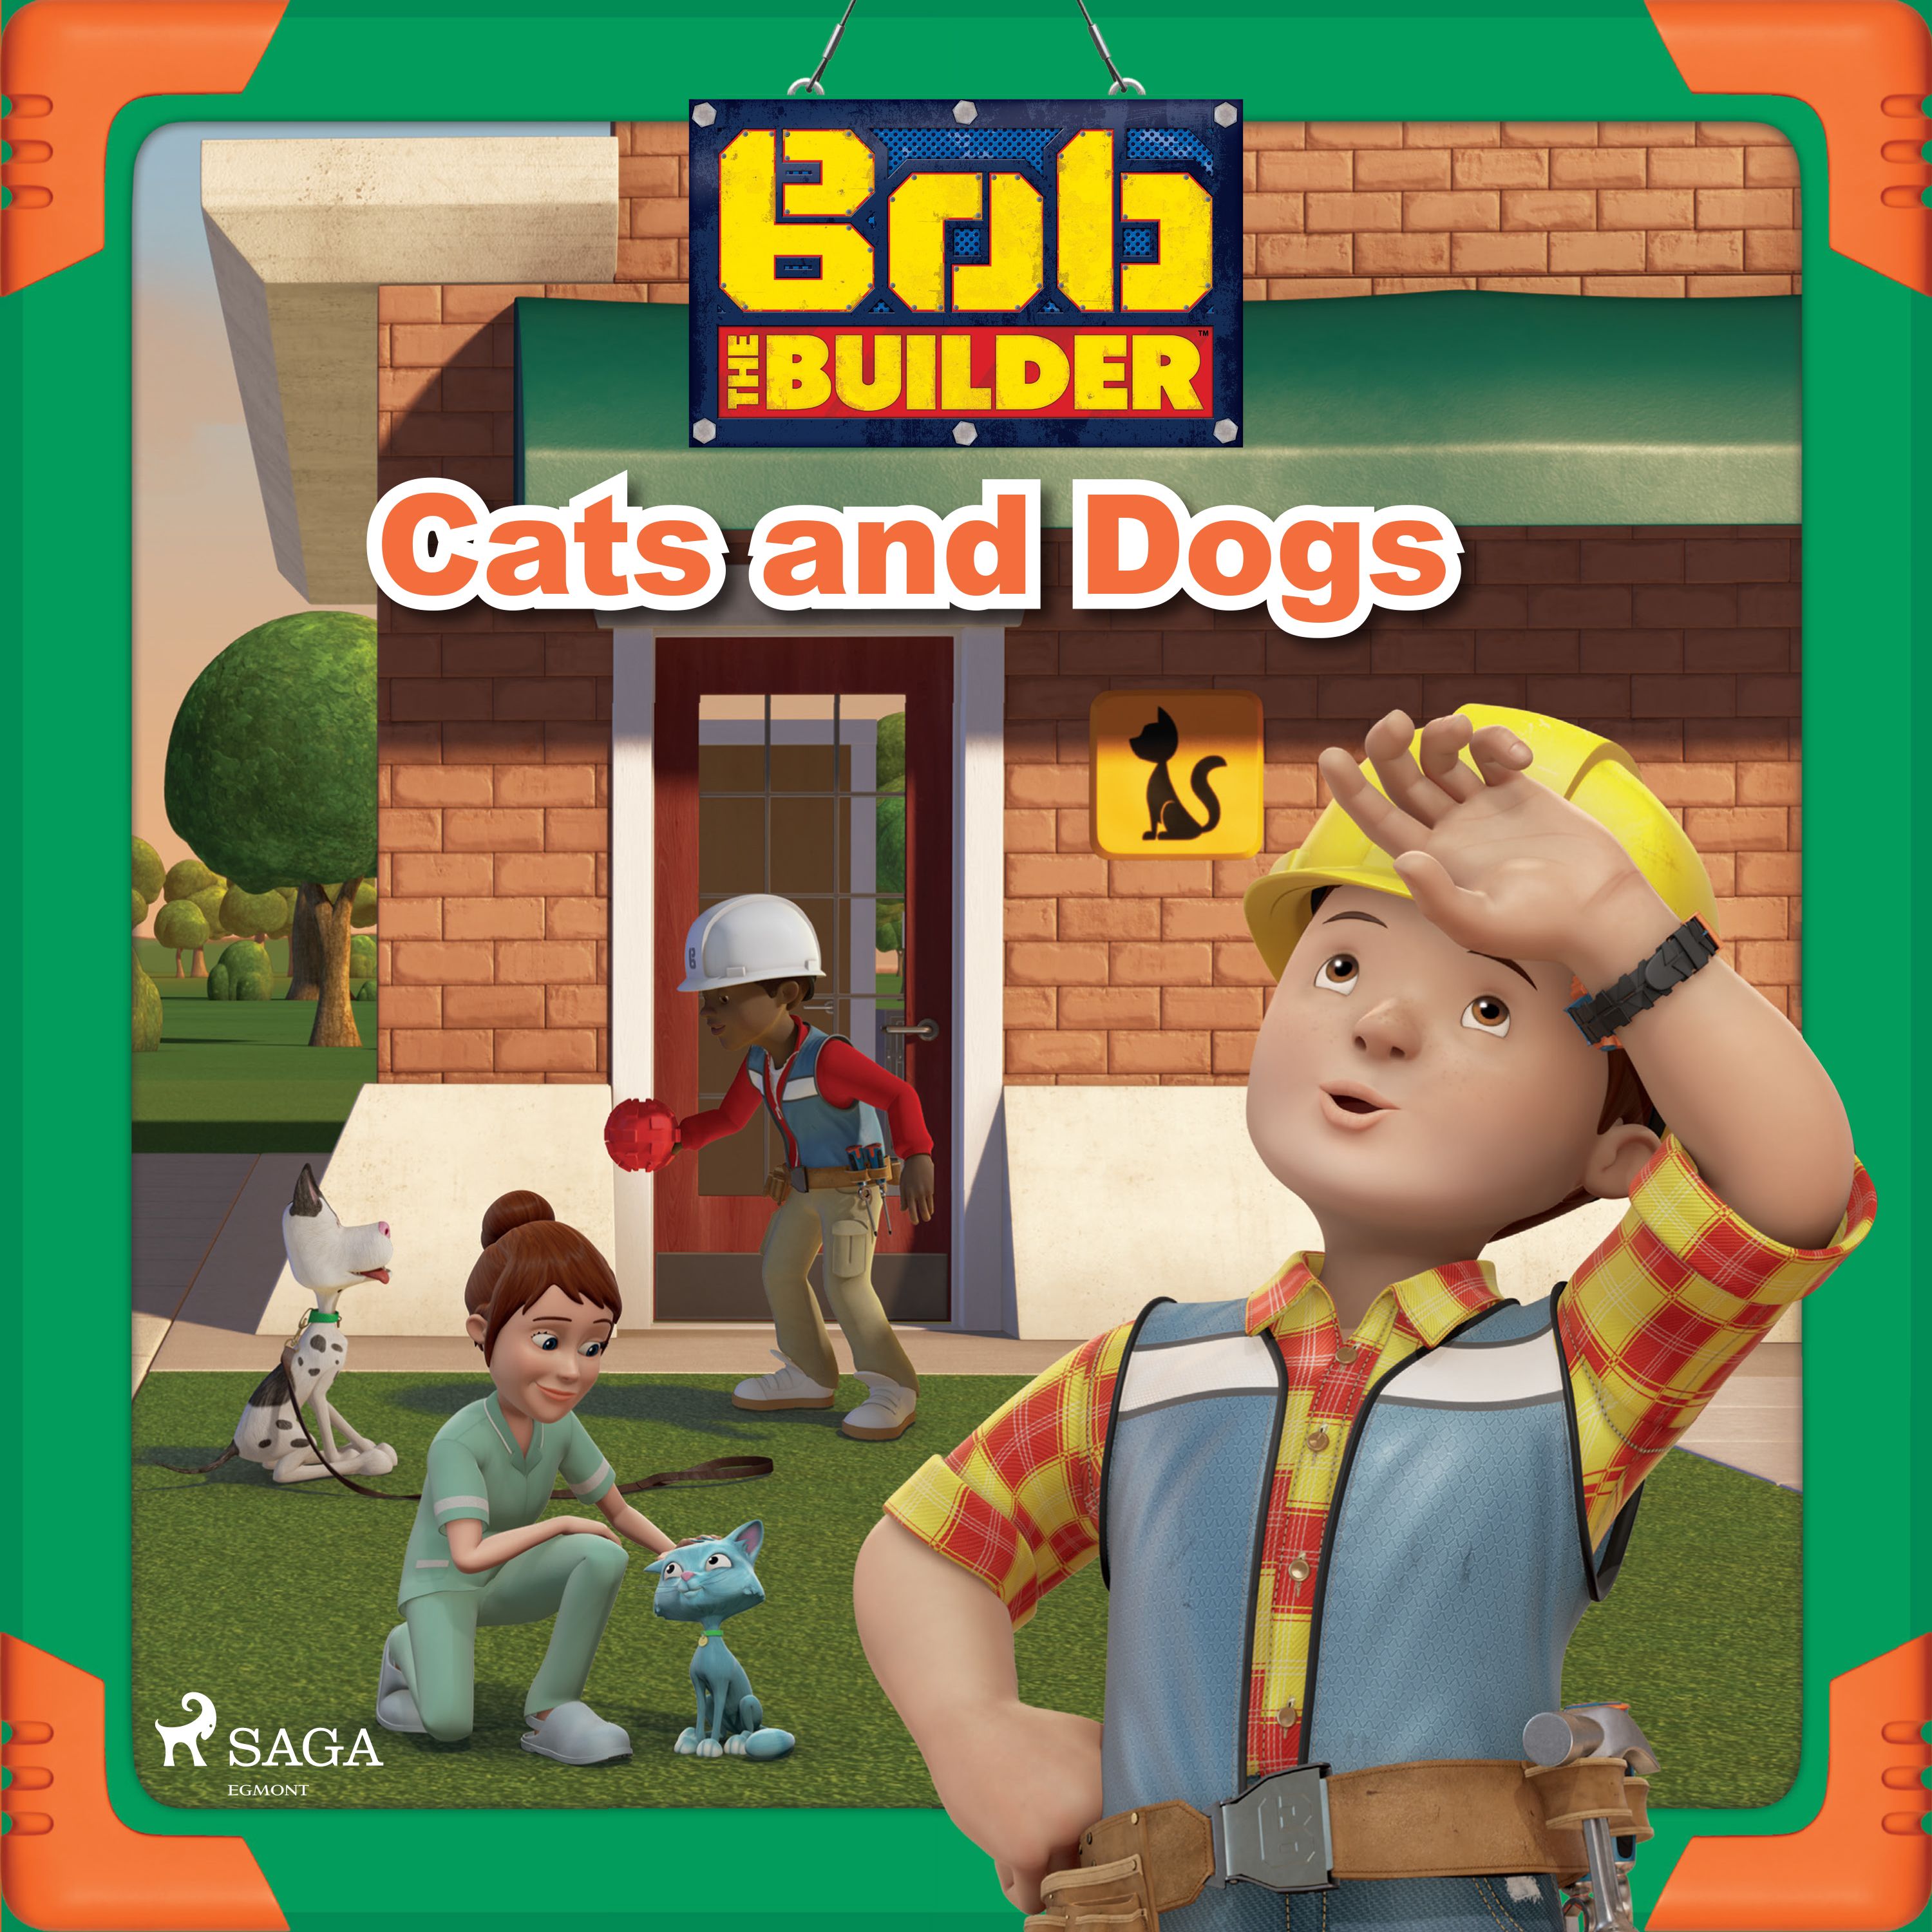 Bob the Builder: Cats and Dogs, lydbog af Mattel